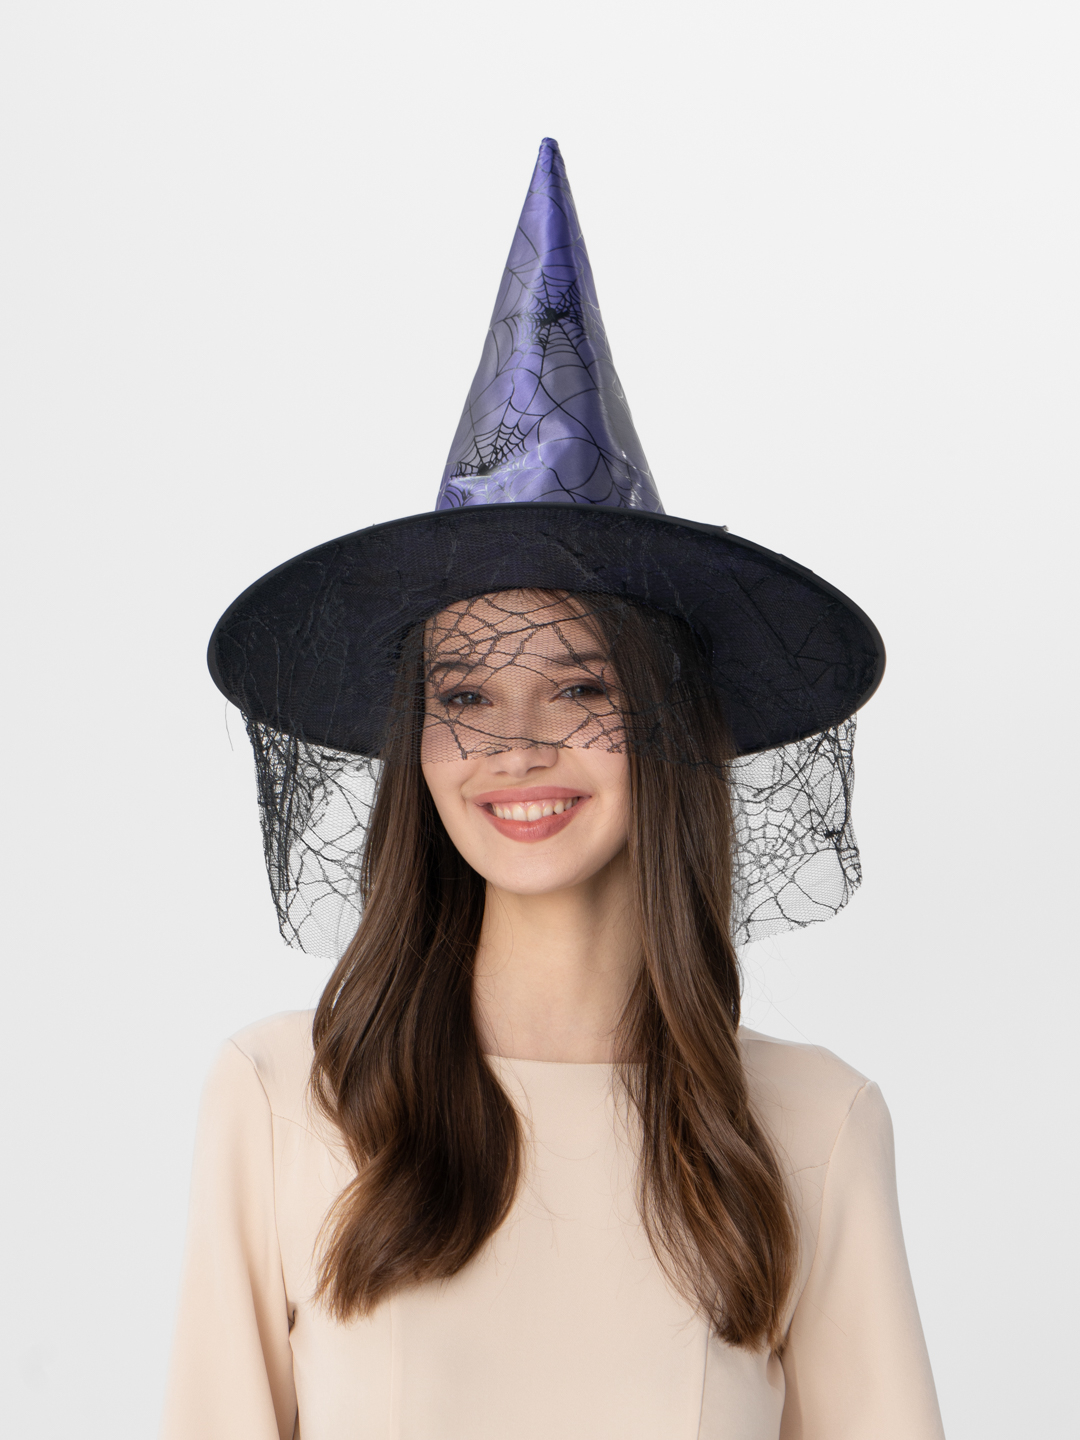 Шляпа ведьмы из бумаги на хэллоуин своими руками поэтапно